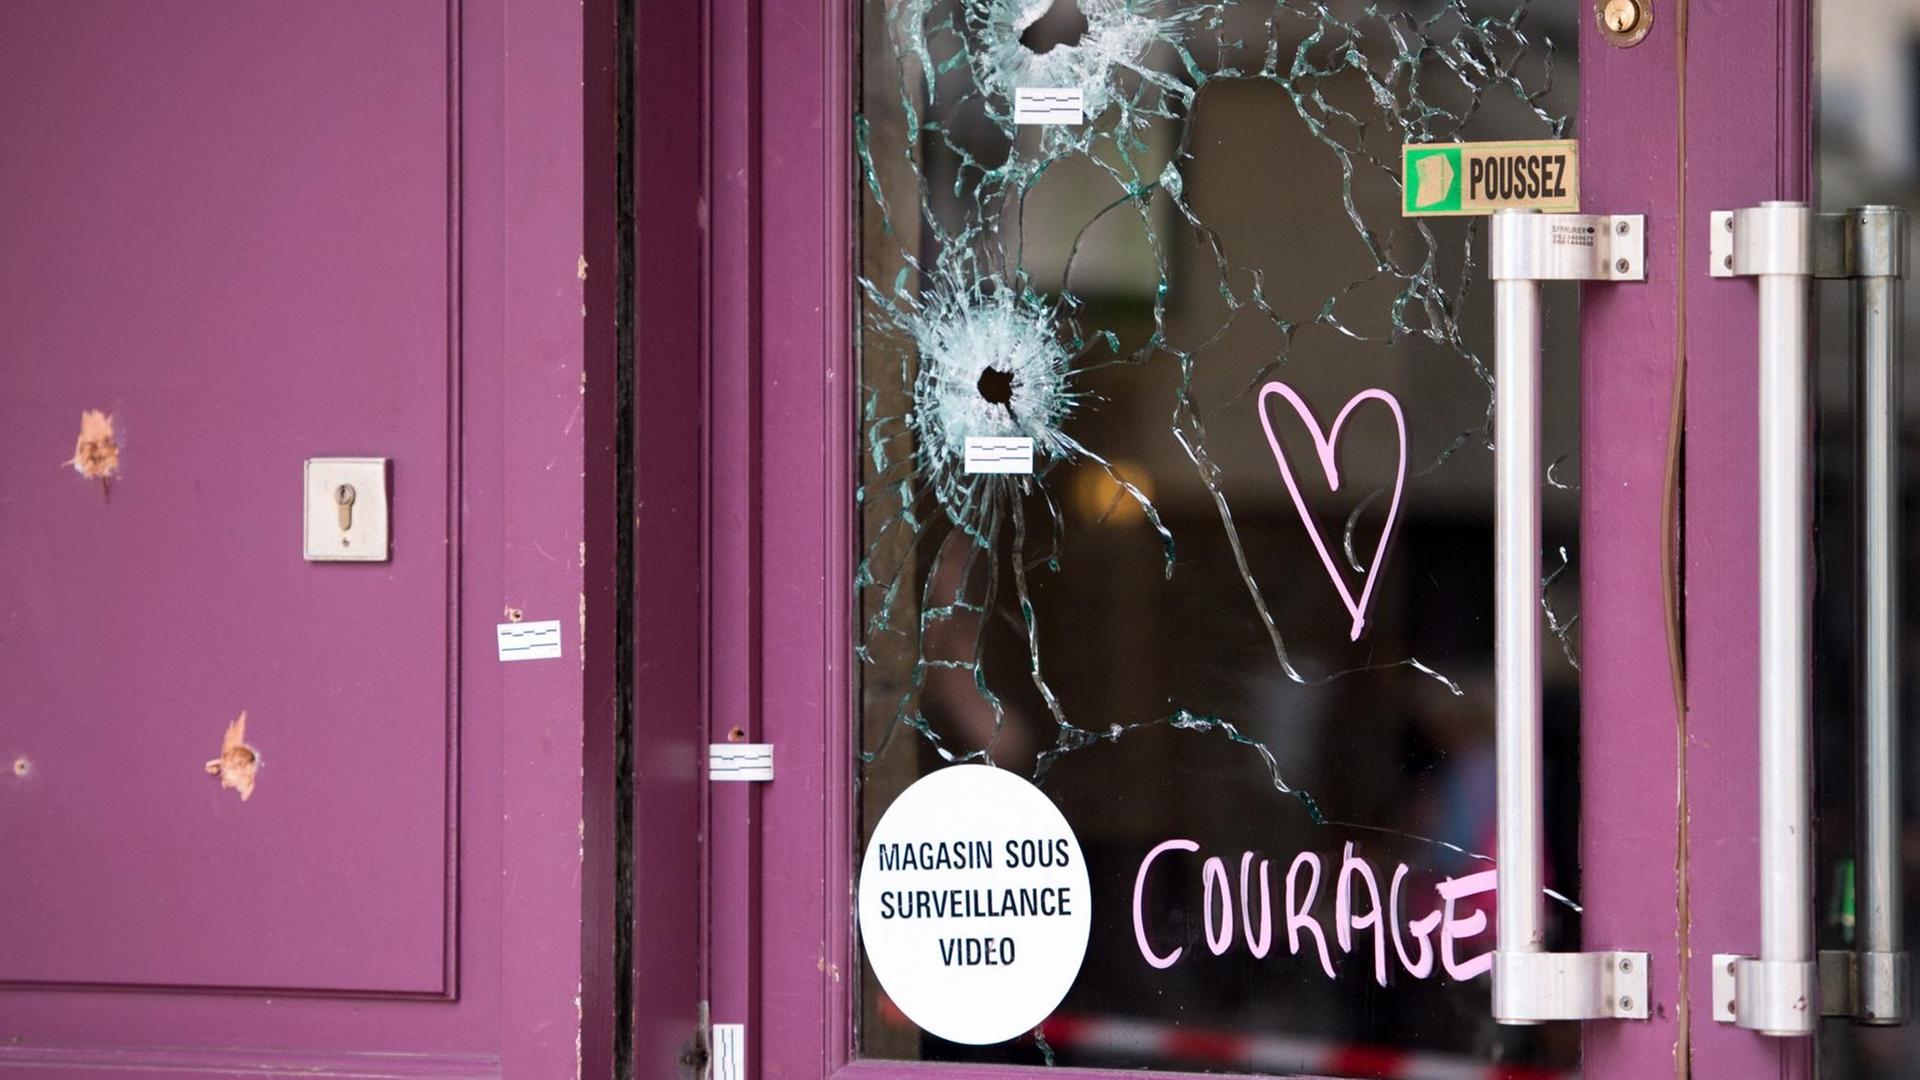 Einschusslöcher an der Fensterscheibe des Restaurants "Casa Nostra" in Paris.